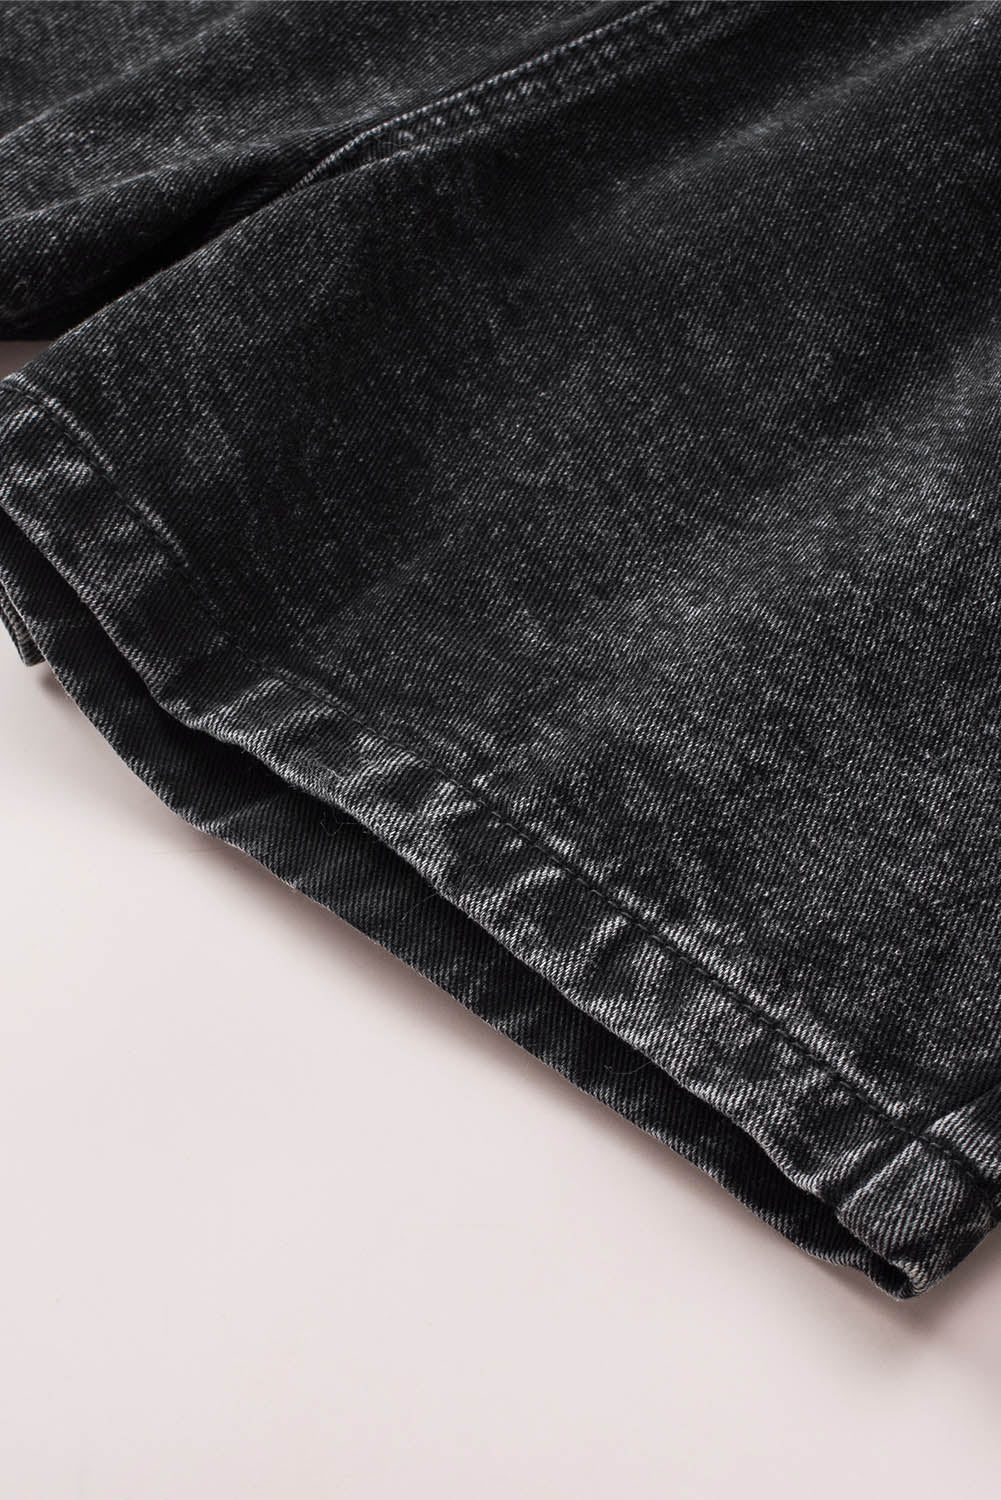 Crne retro kratke traper hlače visokog struka s naborima isprane u izbjeljivaču